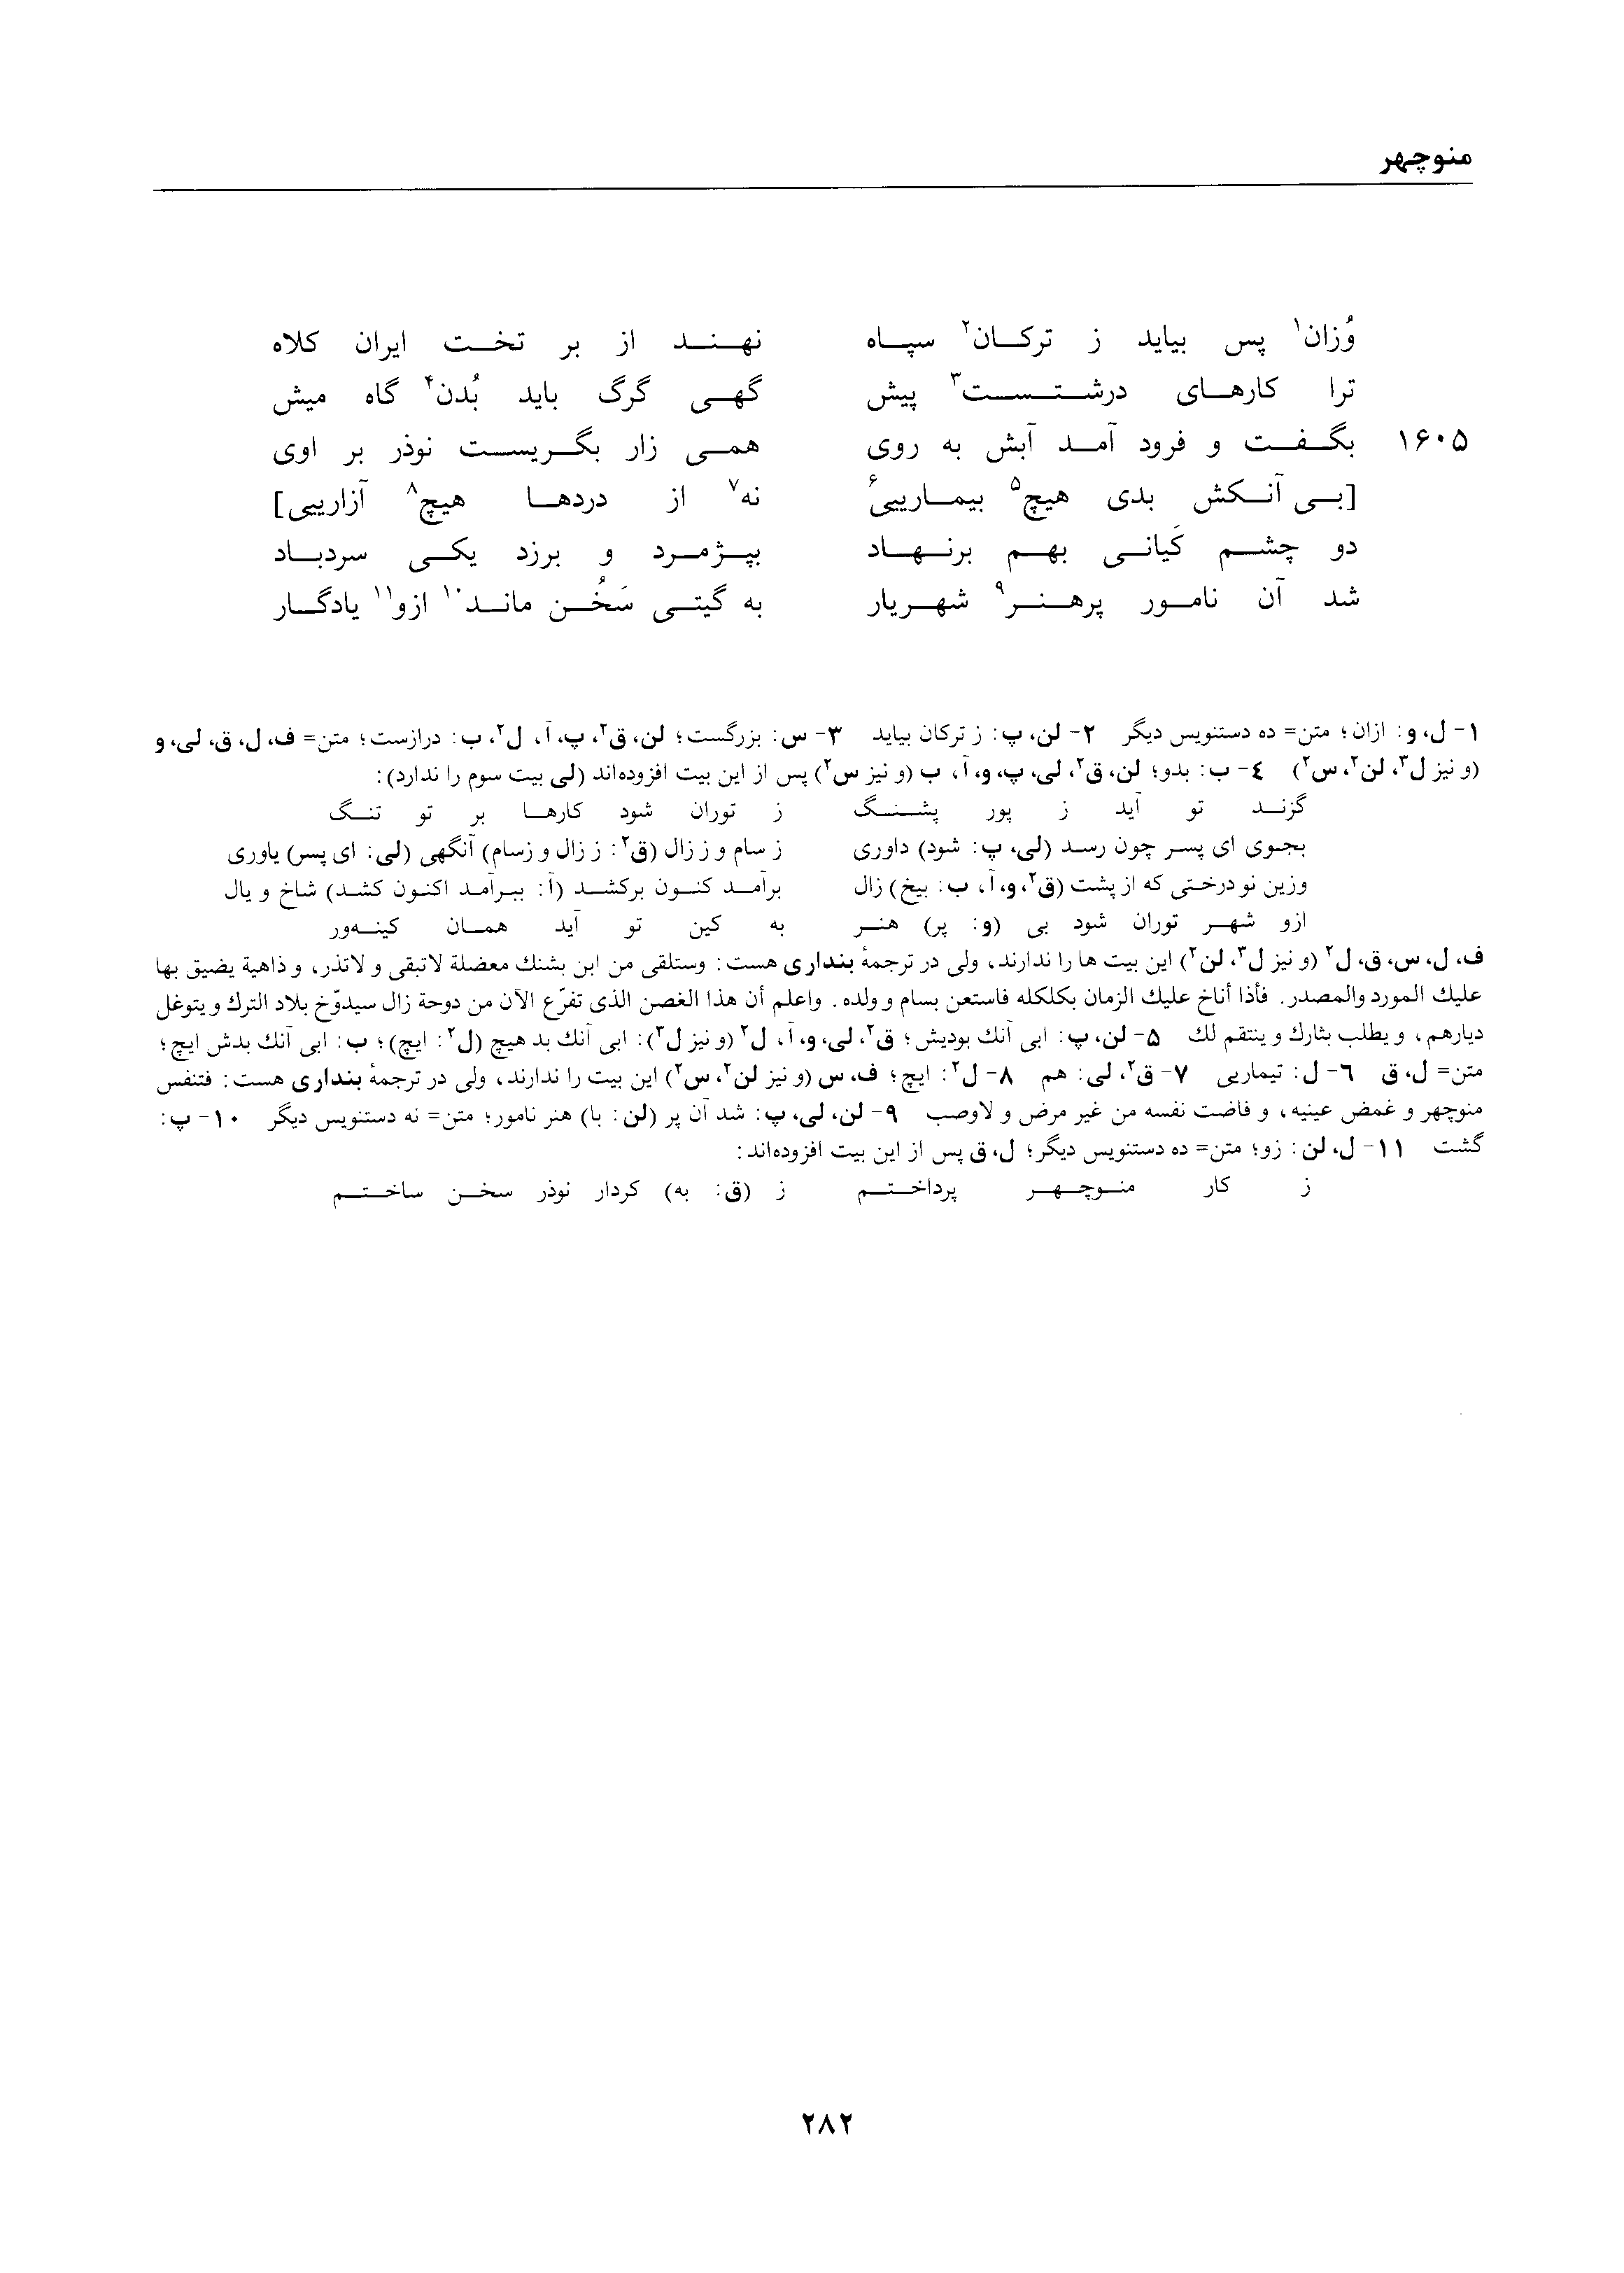 vol. 1, p. 282